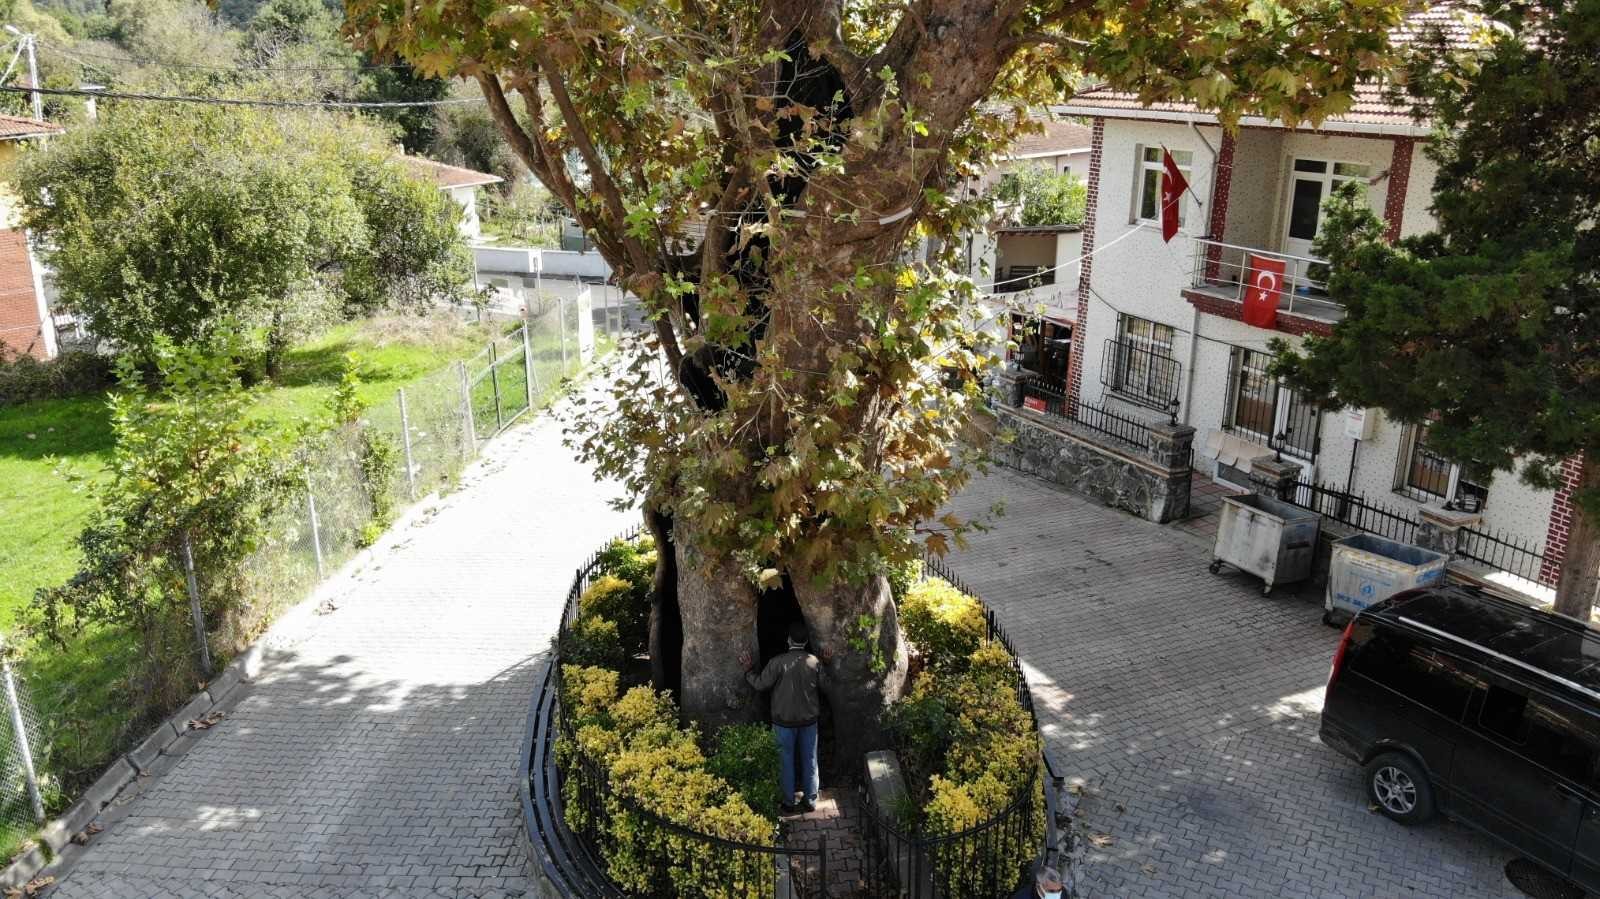 (Özel) Rum çetelerin işkencelerine tanıklık eden 8 asırlık ’işkence ağacı’ #istanbul